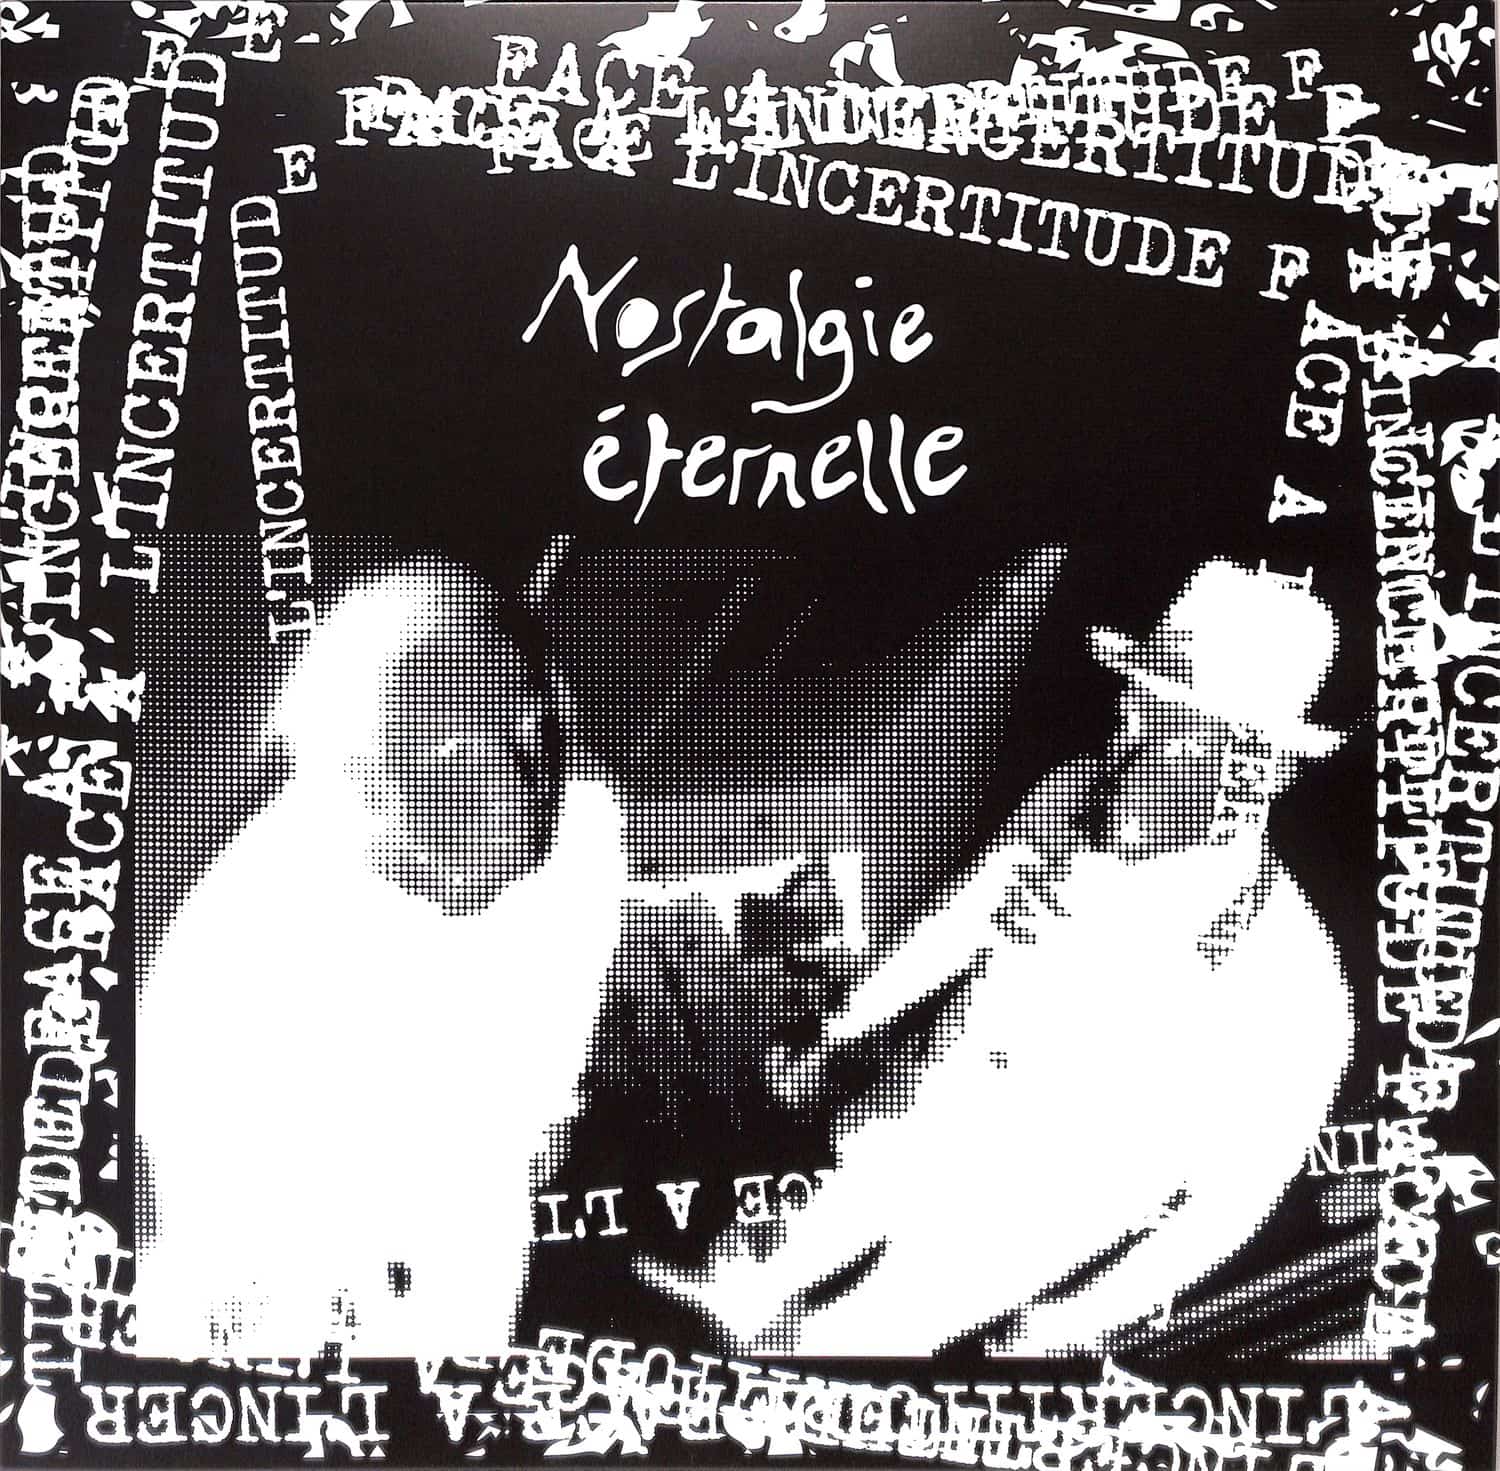 Nostalgie E ternelle - FACE A LINCERTITUDE EP